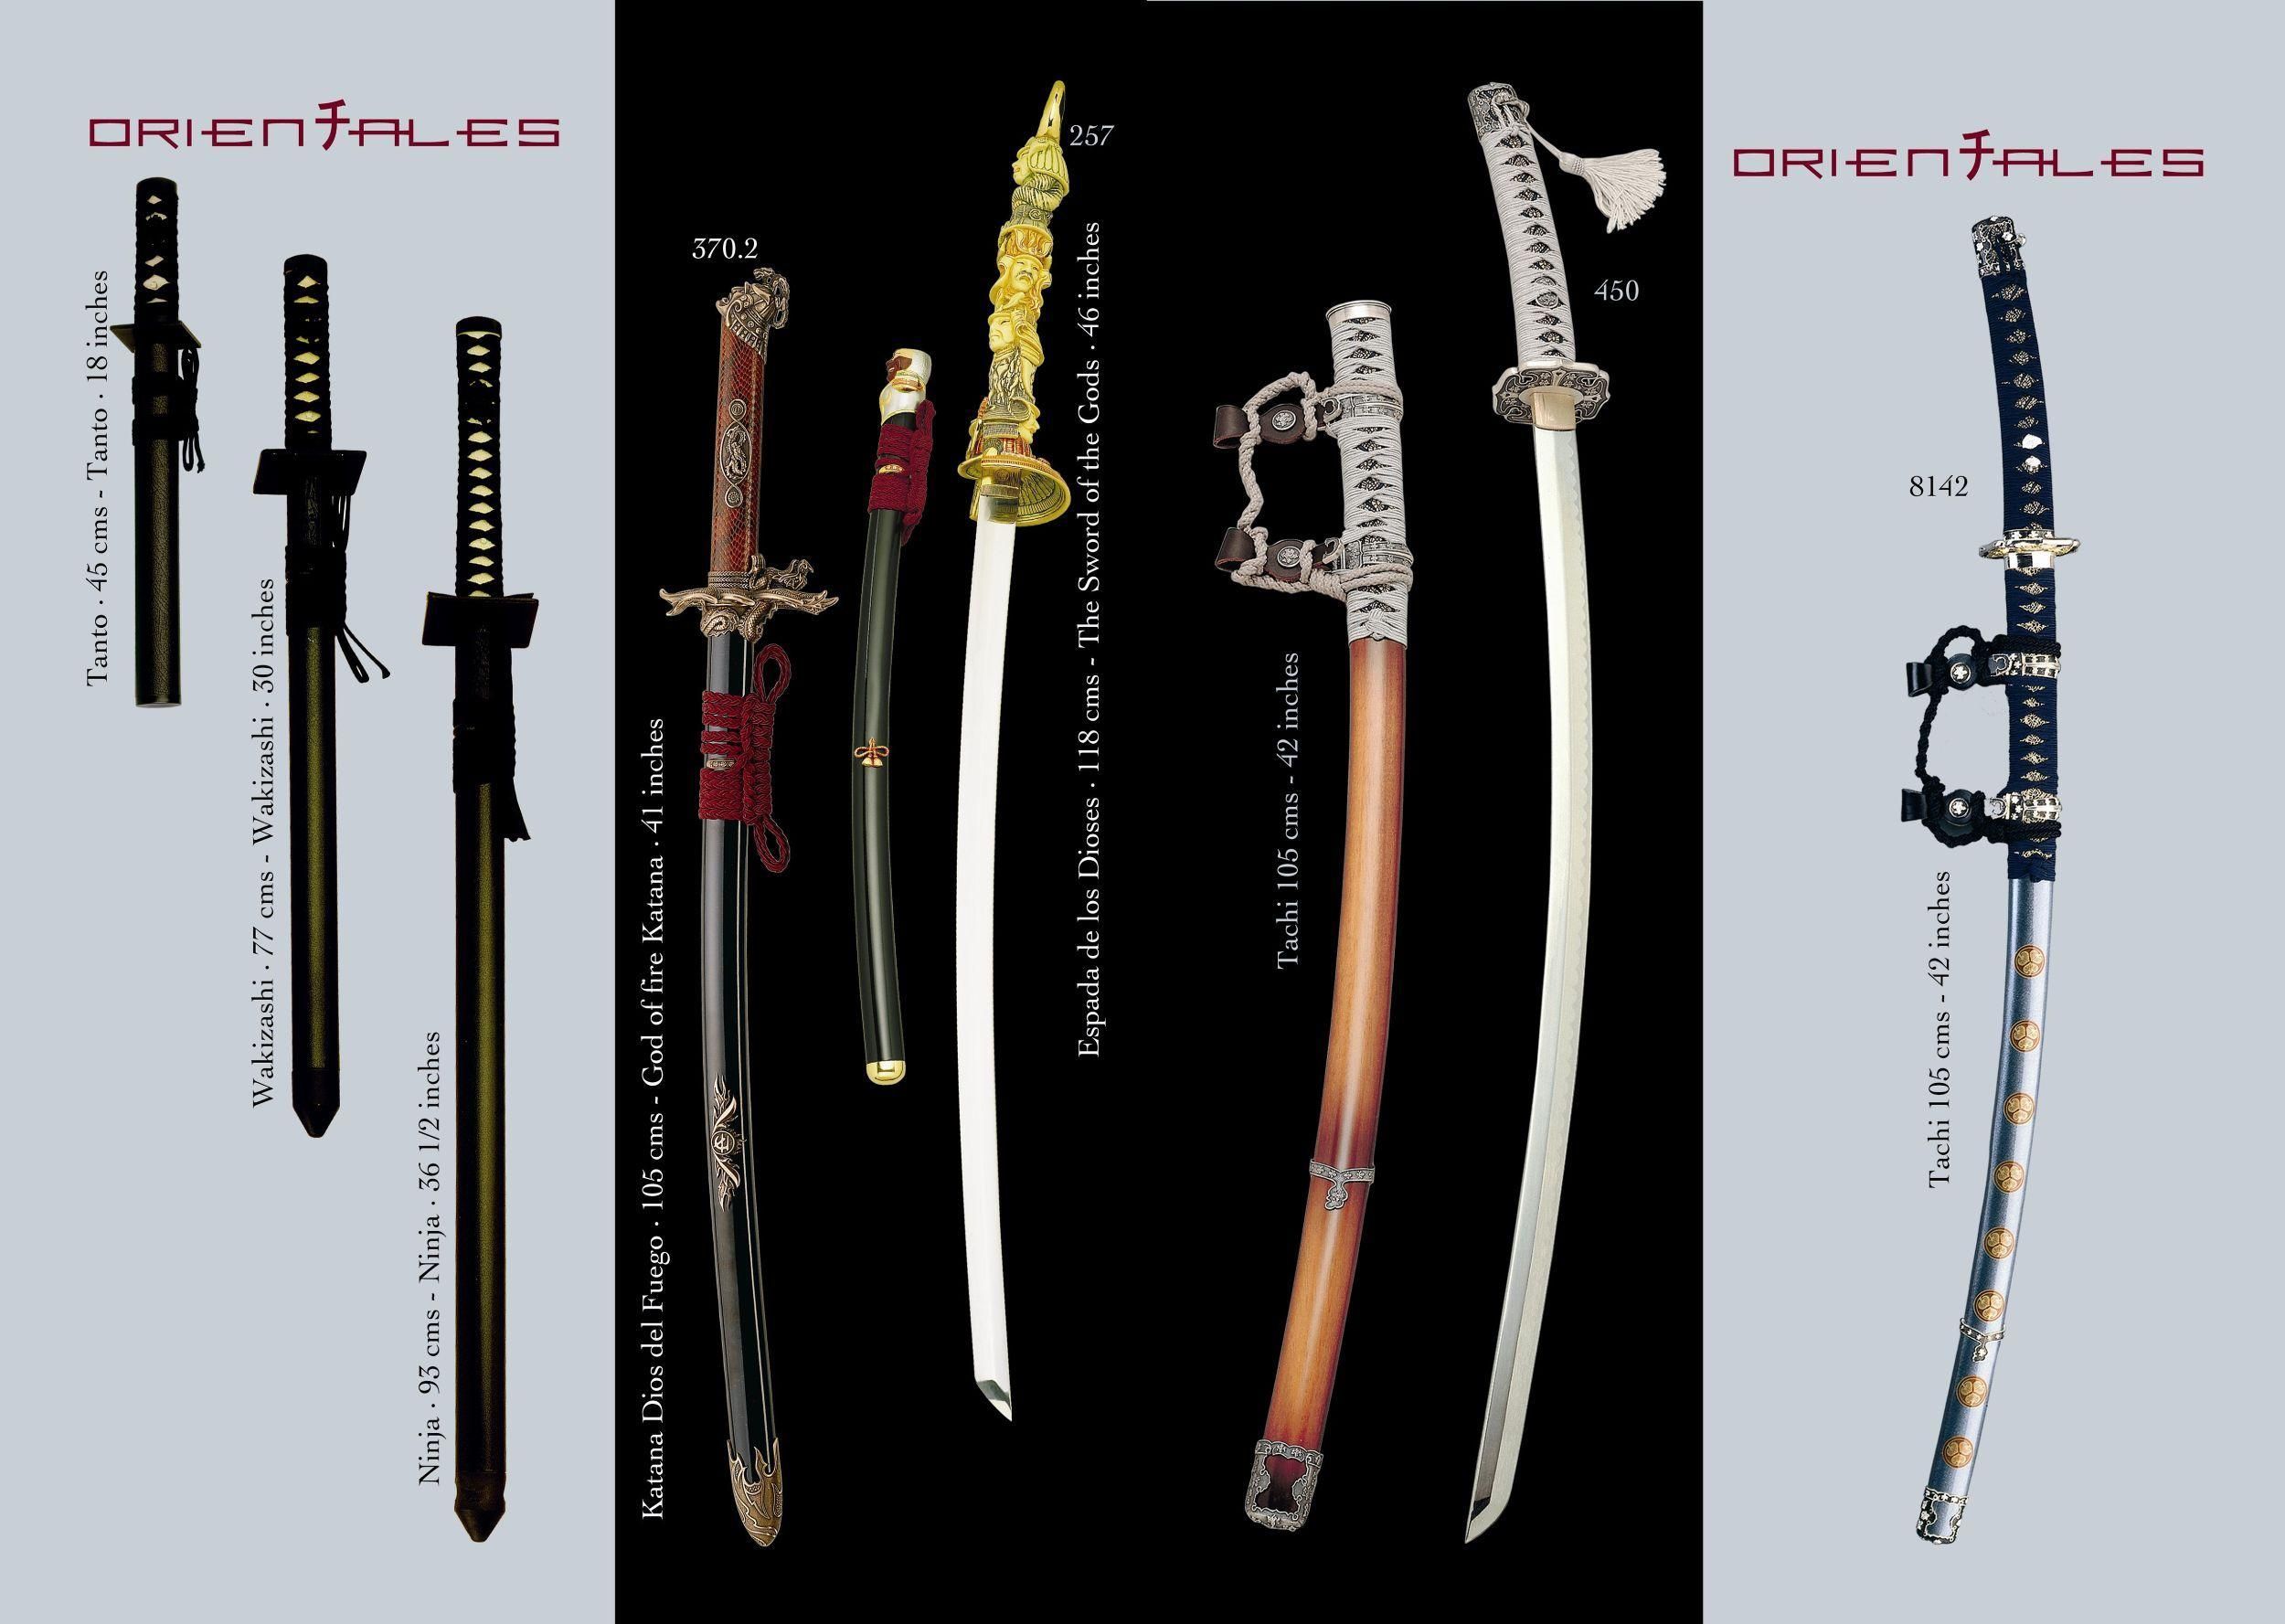 Катана — самый знаменитый меч японии